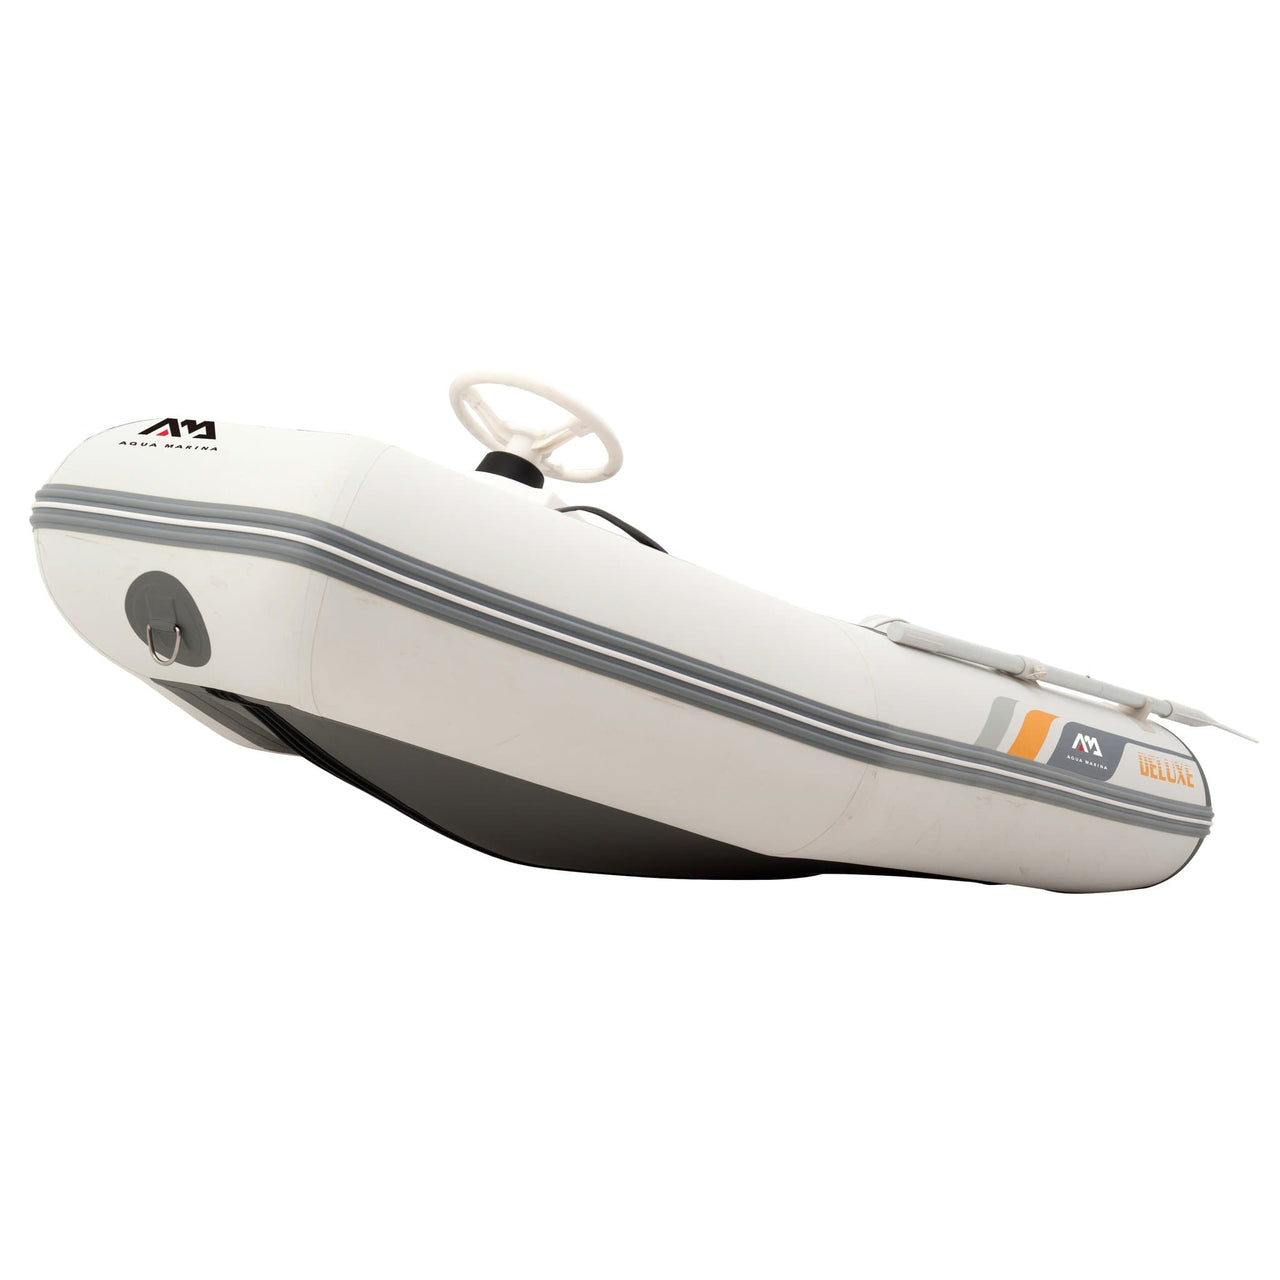 Aqua Marina 9’1” x 4’11” A-Deluxe Sports Boat with Aluminum Deck - Good Wave Canada